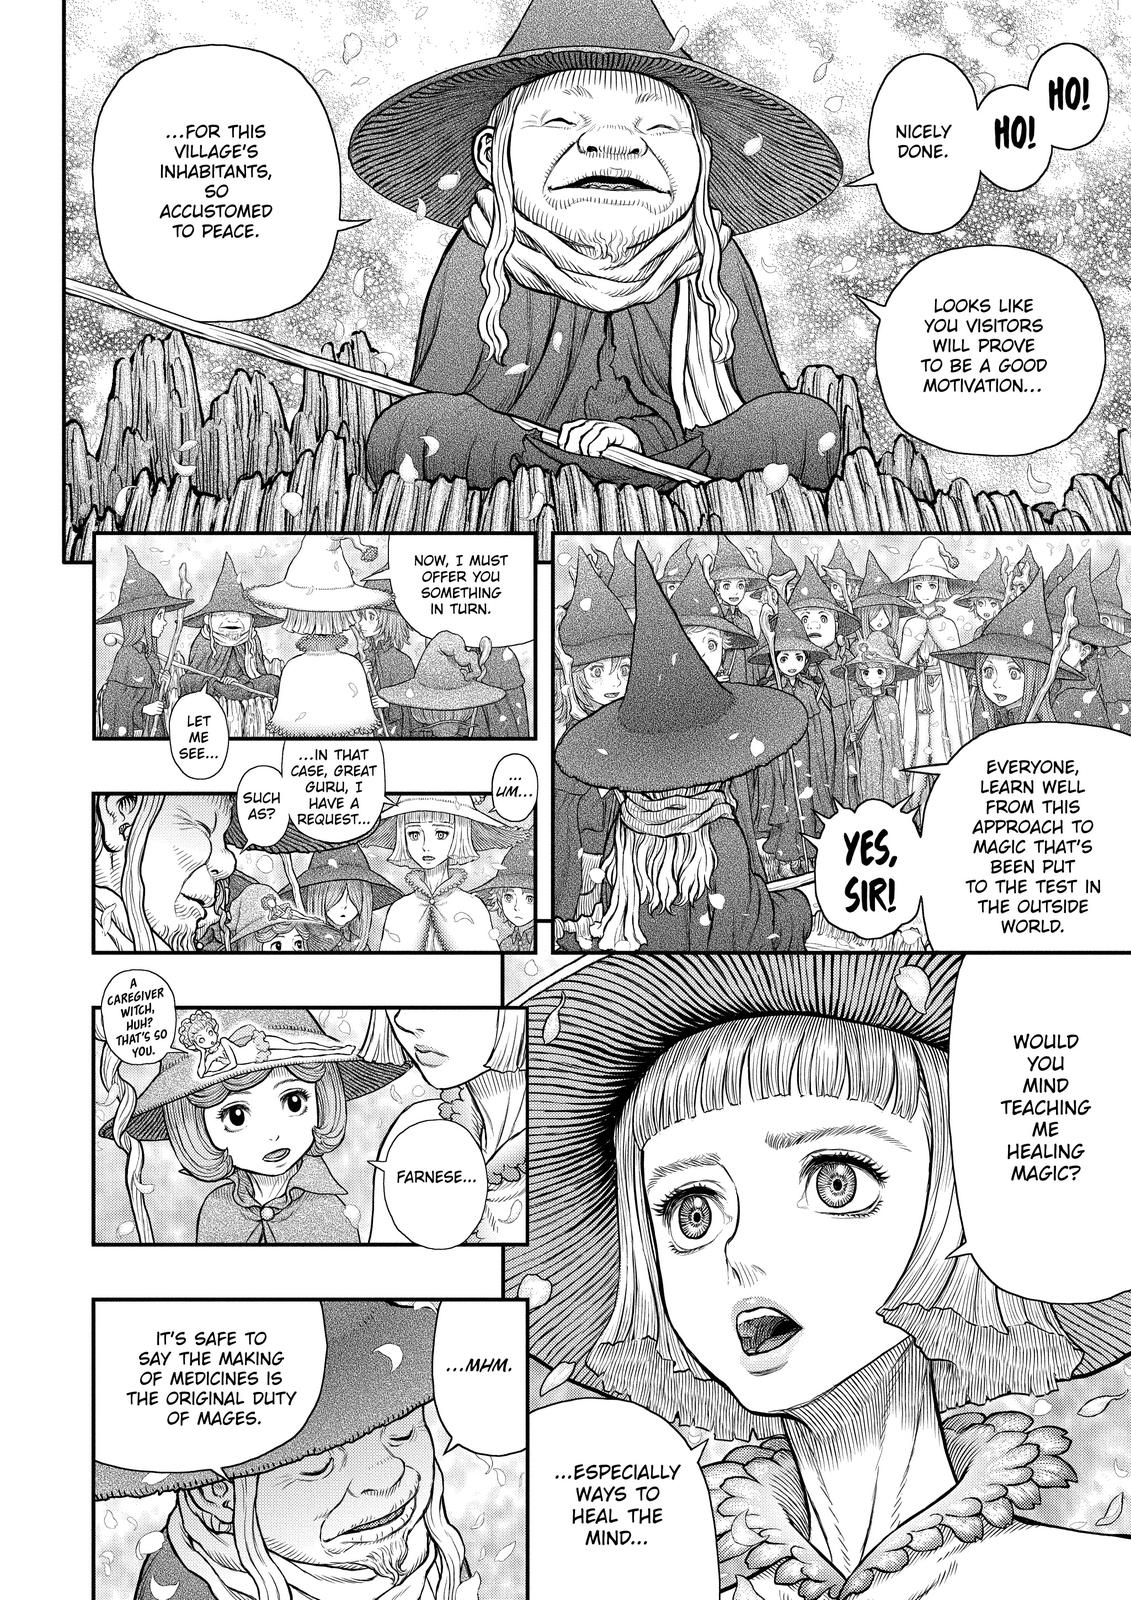 Berserk Manga Chapter 360 image 14